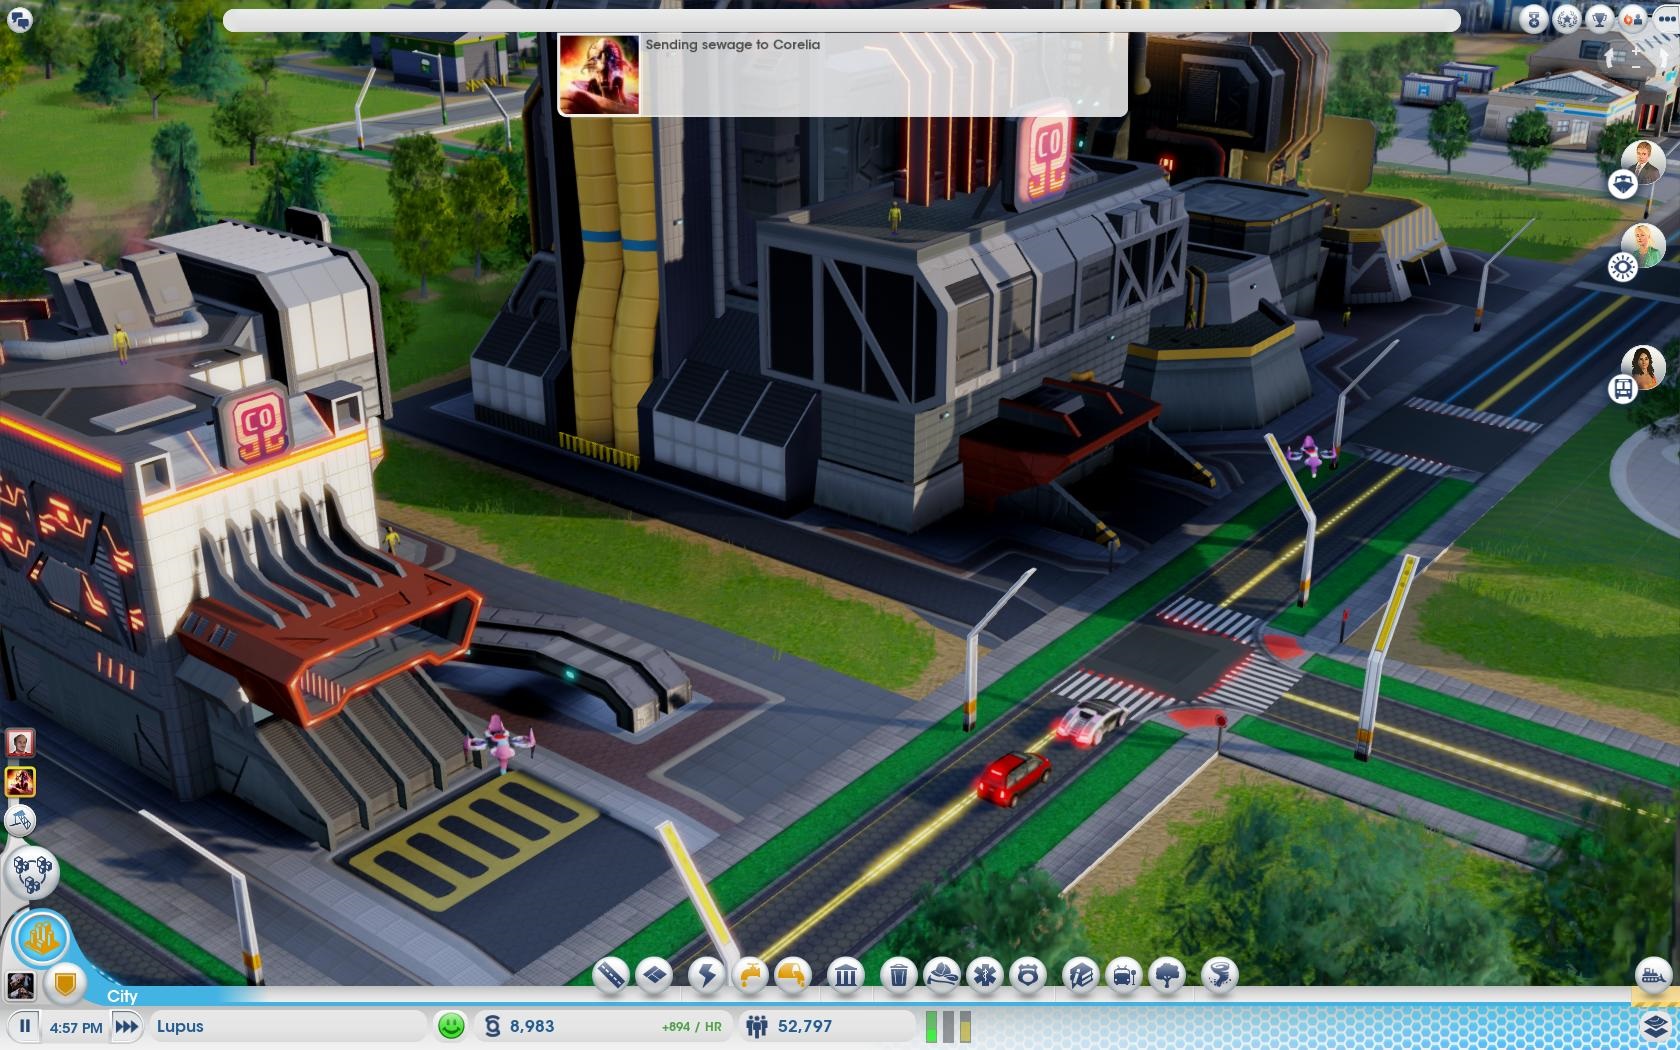 SimCity: Cities of Tomorrow Omega negatvne vplva na prostredie, ale prina modern vdobytky, vrtane dronov.